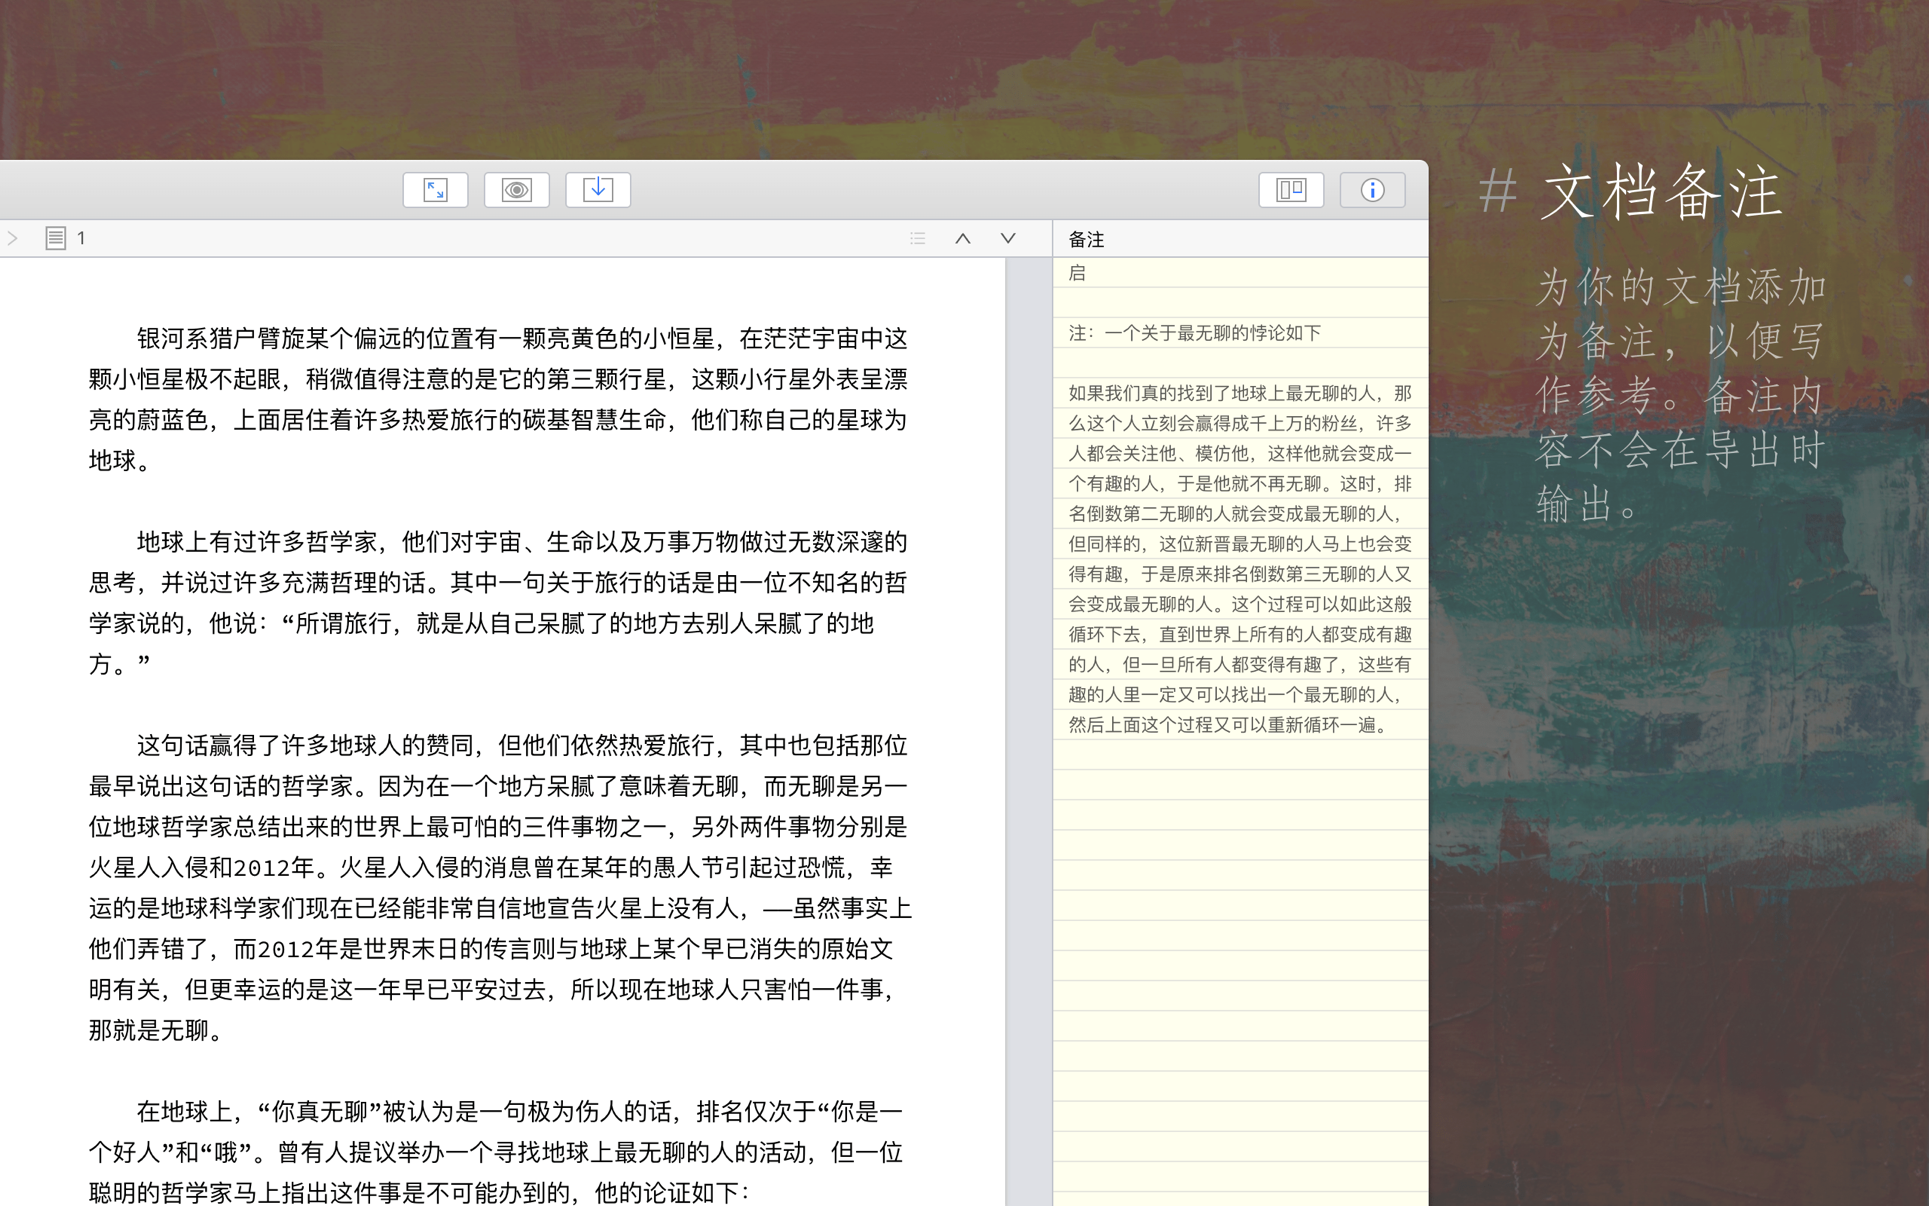 妙笔 WonderPen for Mac 2.3.4 中文破解版 优秀的文本写作工具